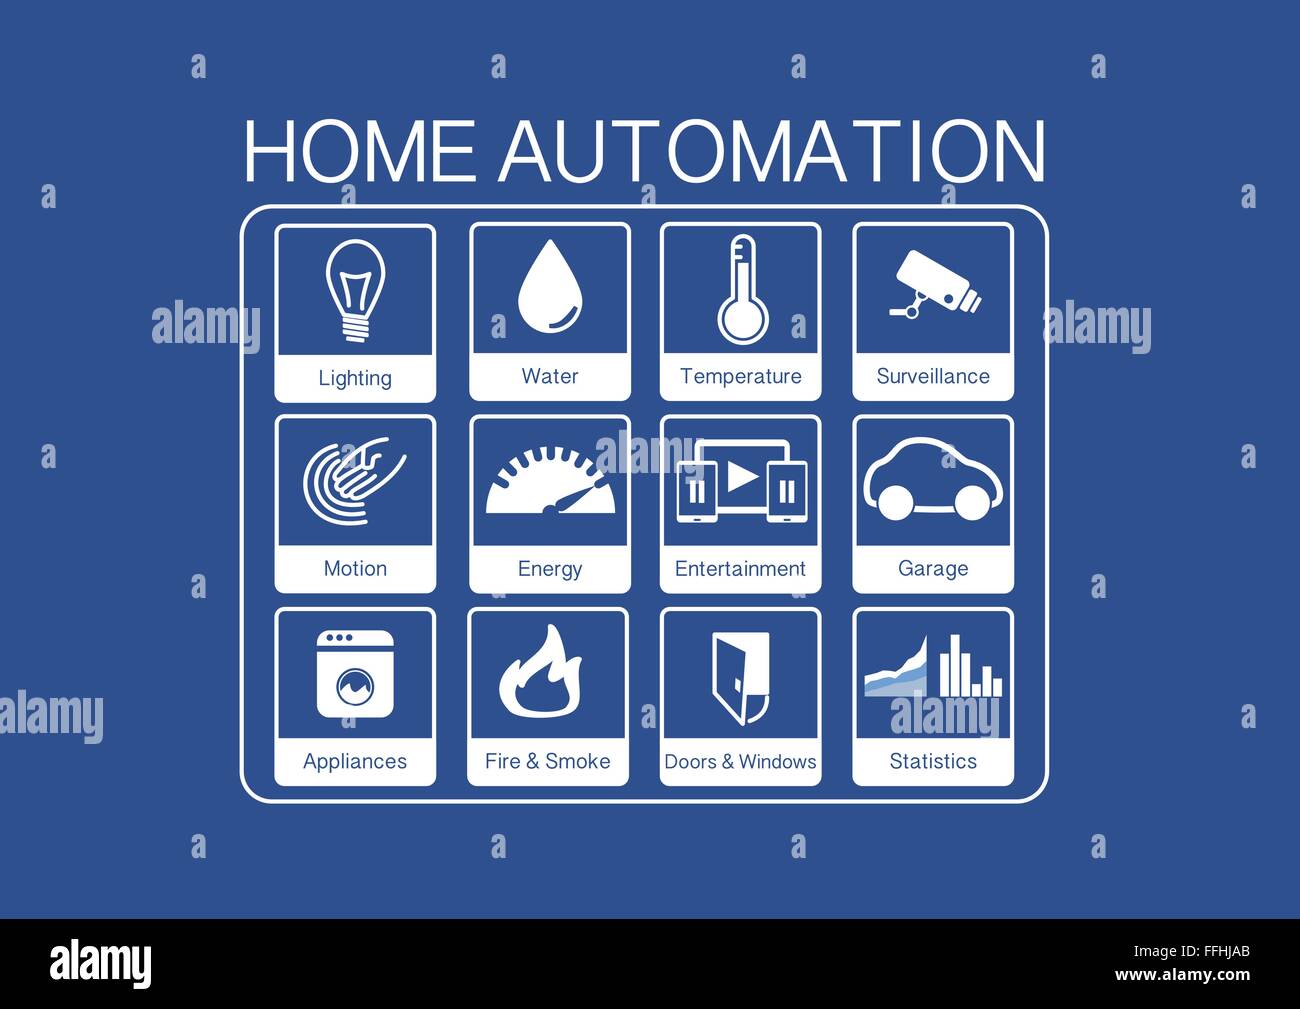 Icone vettoriali per home automation per controllare una casa intelligente come luce, acqua, sensori, elettrodomestici, le videocamere di sorveglianza Illustrazione Vettoriale